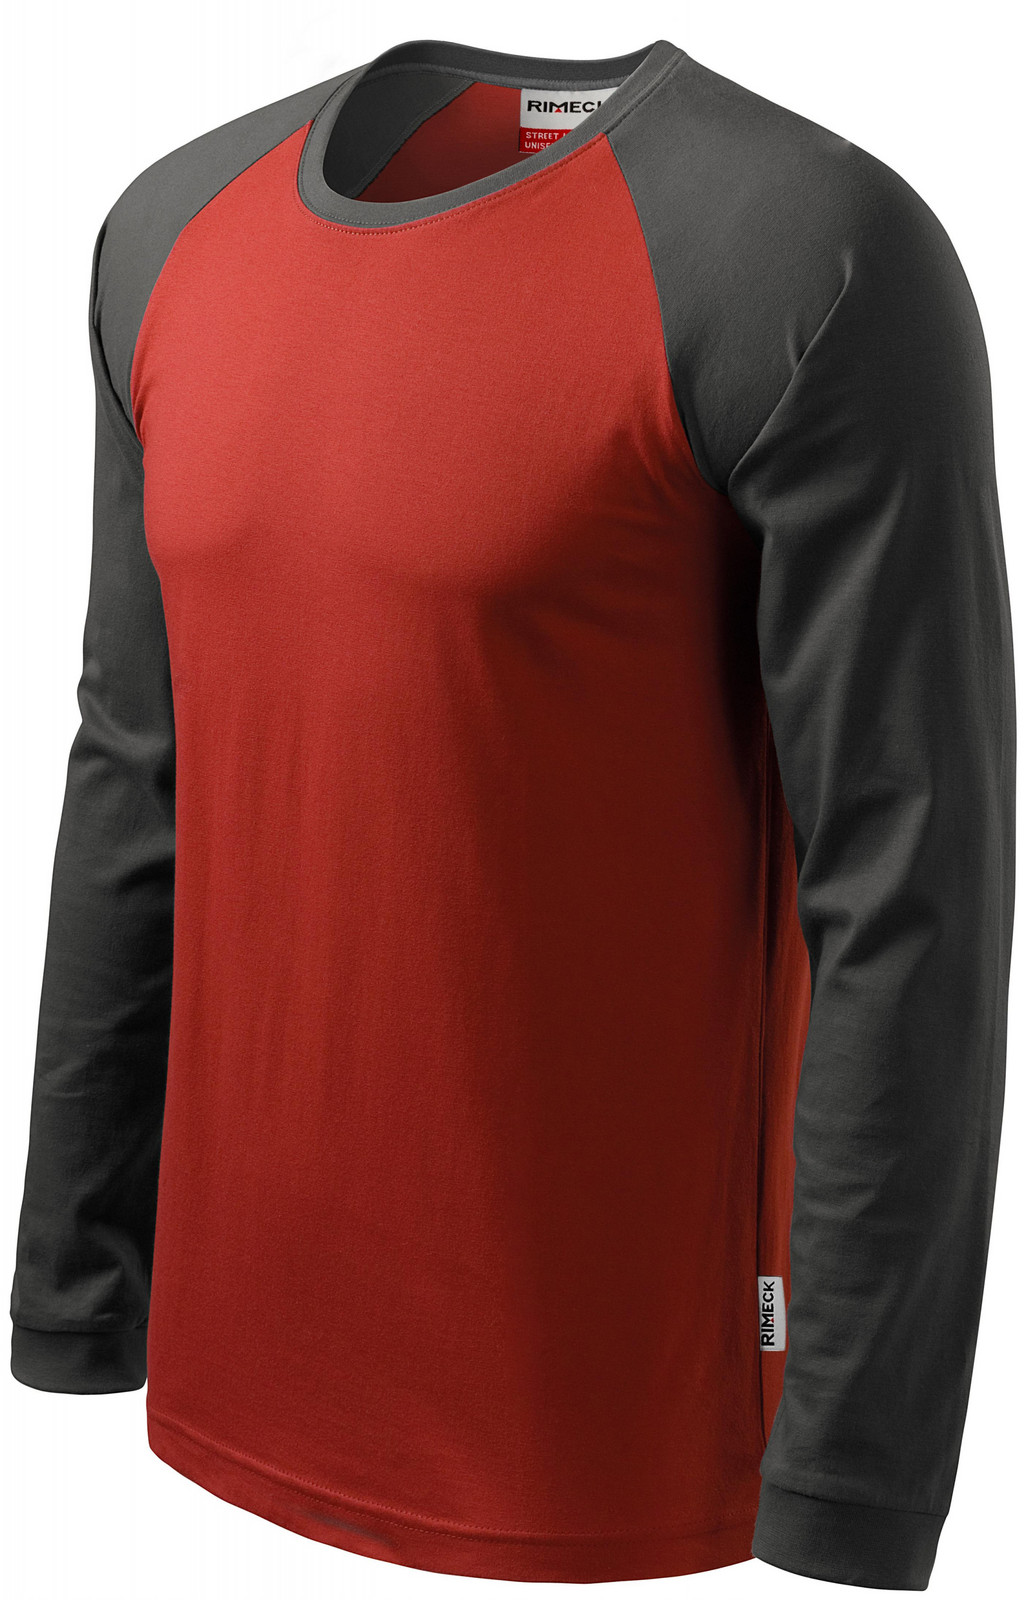 Pánské triko s dlouhým rukávem, kontrastní, marlboro červená, S